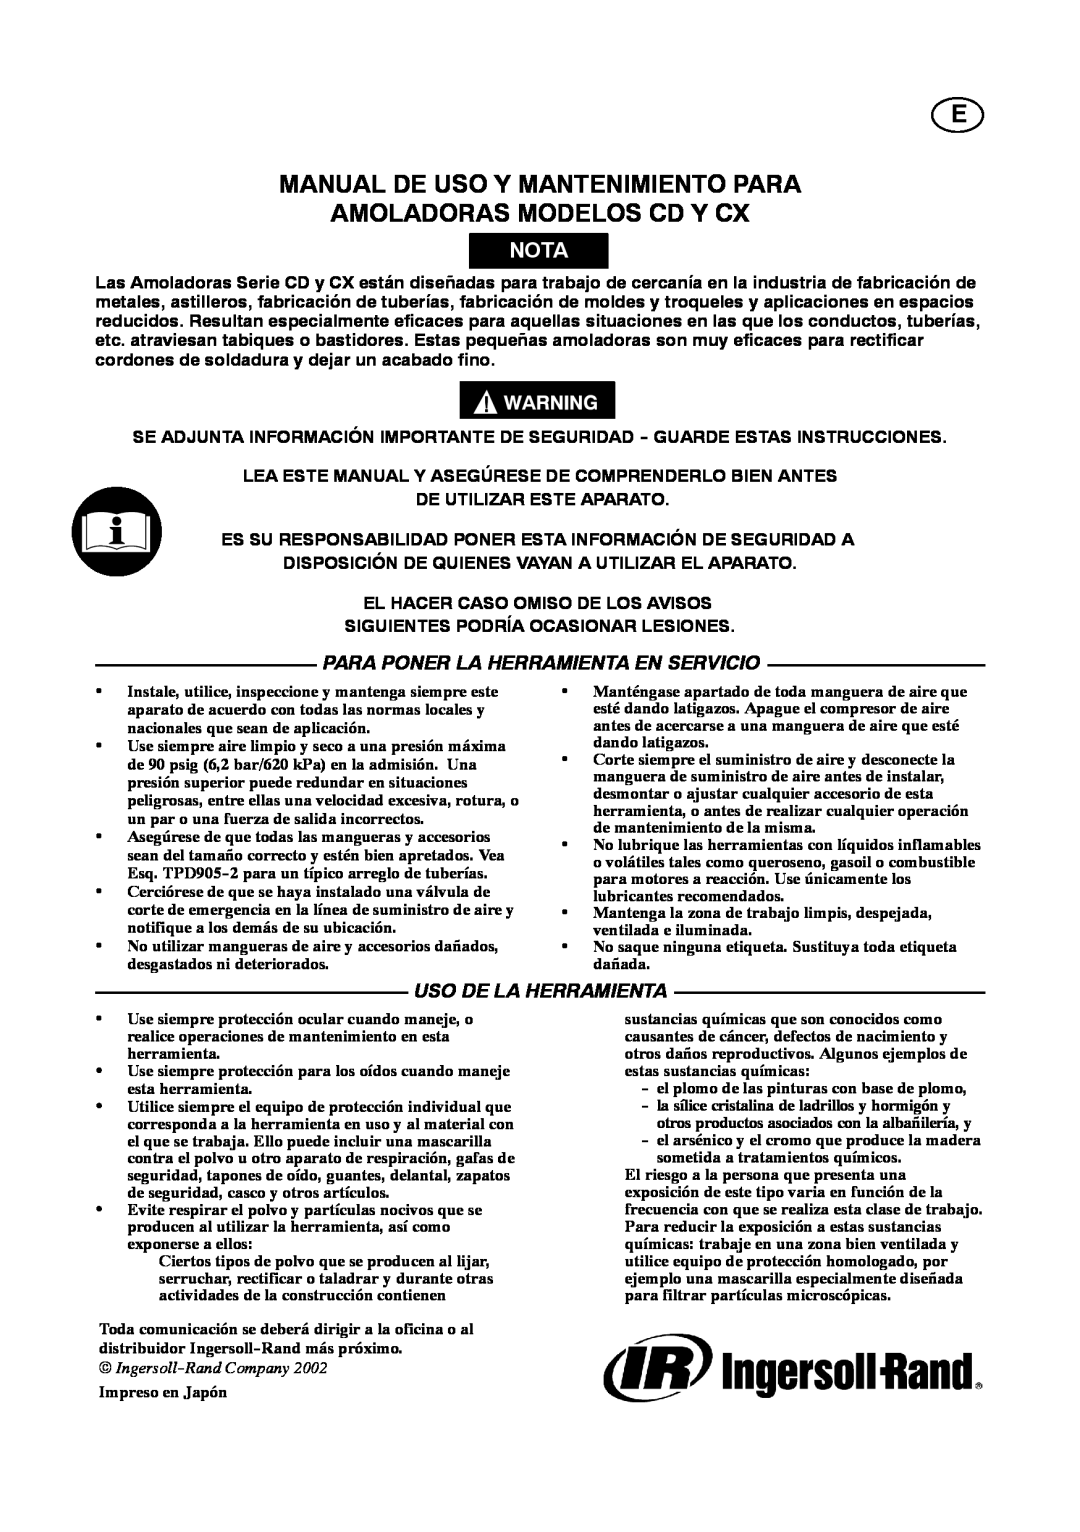 Ingersoll-Rand 4578217 manual E Manual De Uso Y Mantenimiento Para Amoladoras Modelos Cd Y Cx, Nota, Uso De La Herramienta 